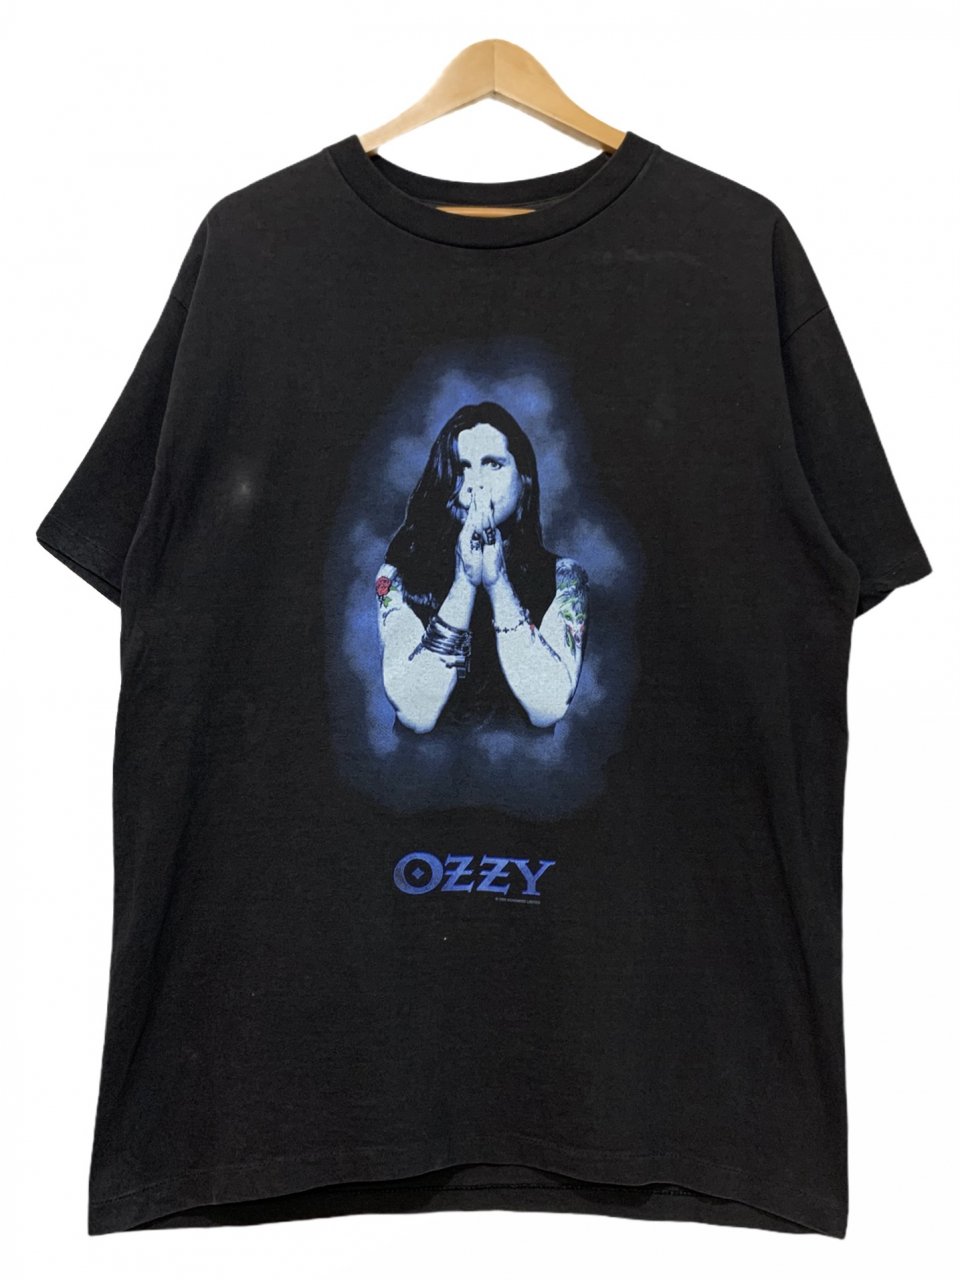 オジー・オジボーン Ozzy Osbourne バンT 黒 プリントT